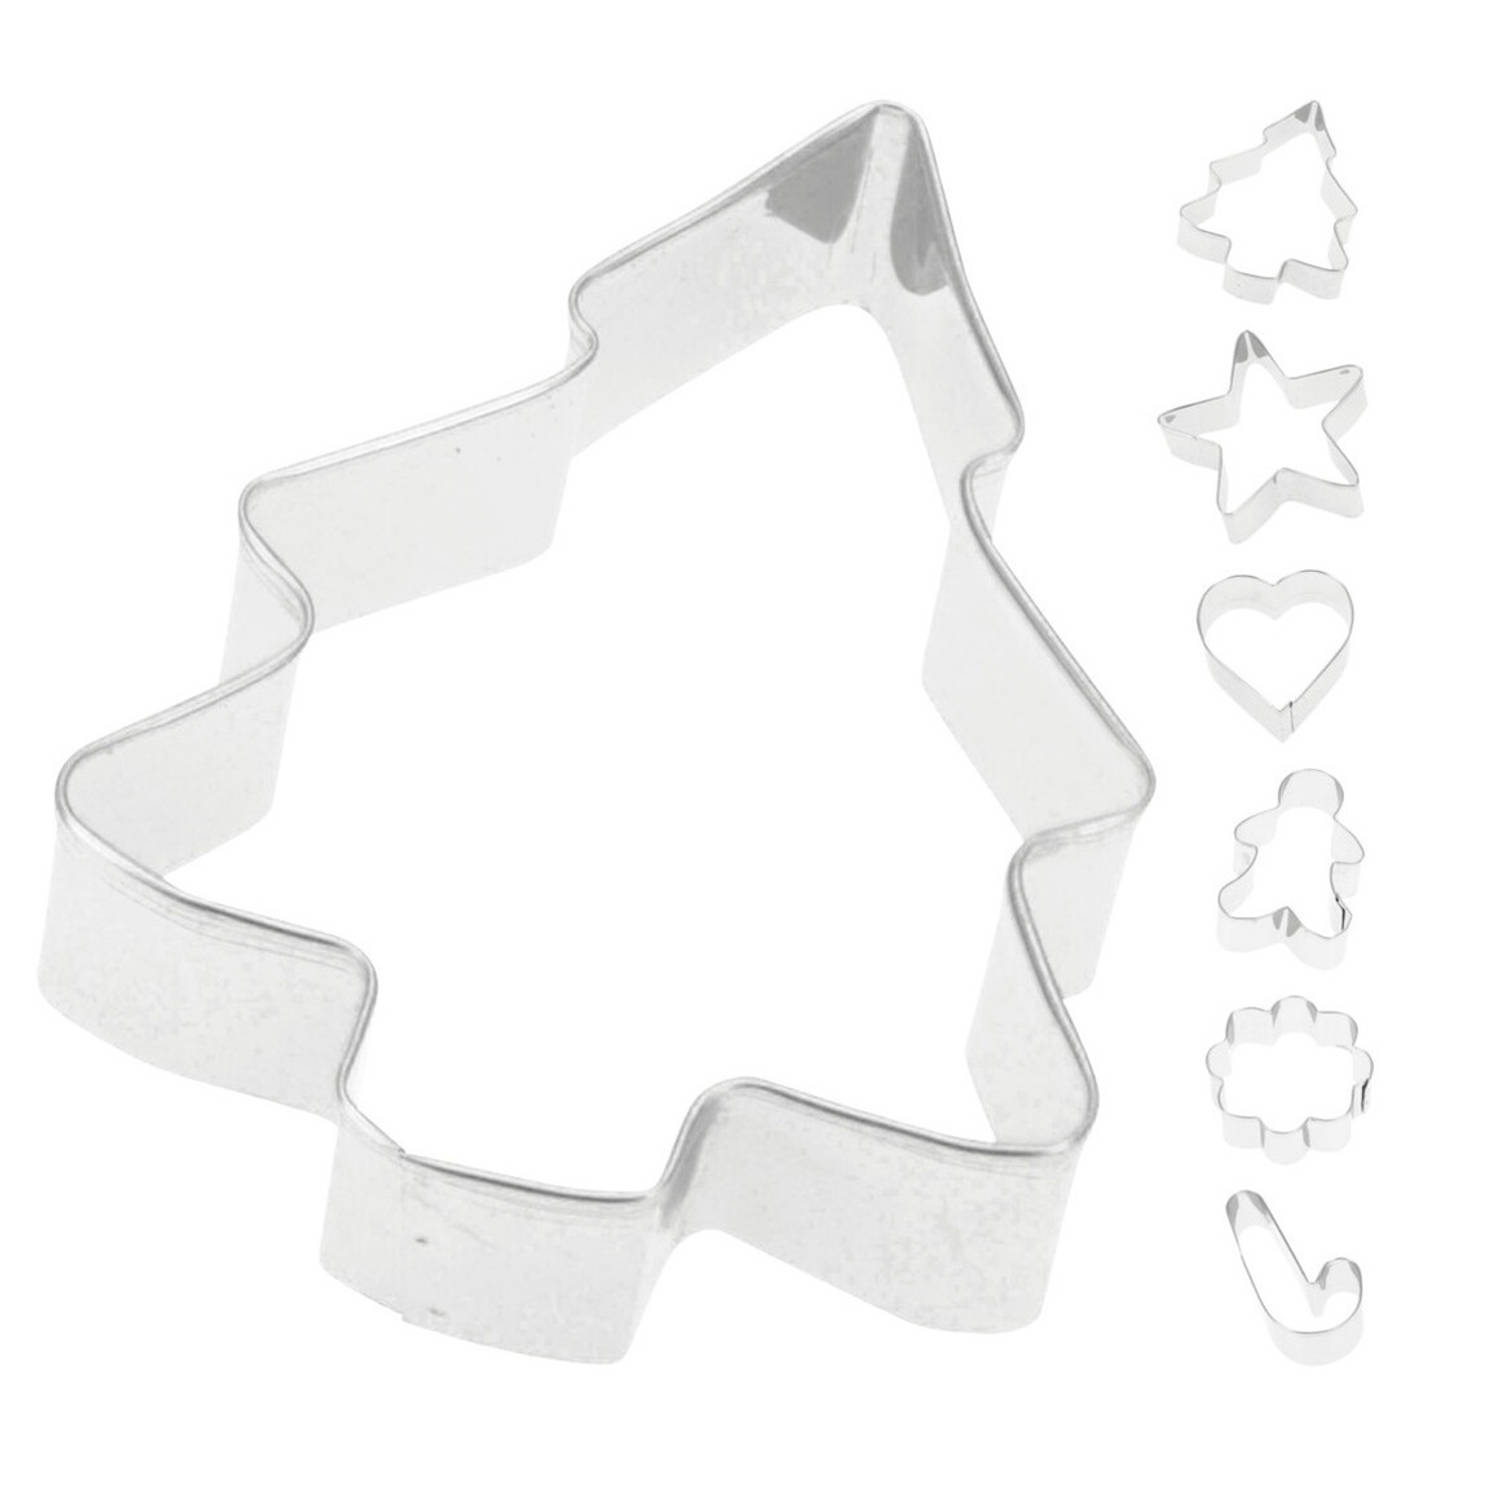 Transparant Maestro Lauw 6x Kerst thema koekvormpjes/uitsteek vormpjes - Uitsteekvormen | Blokker